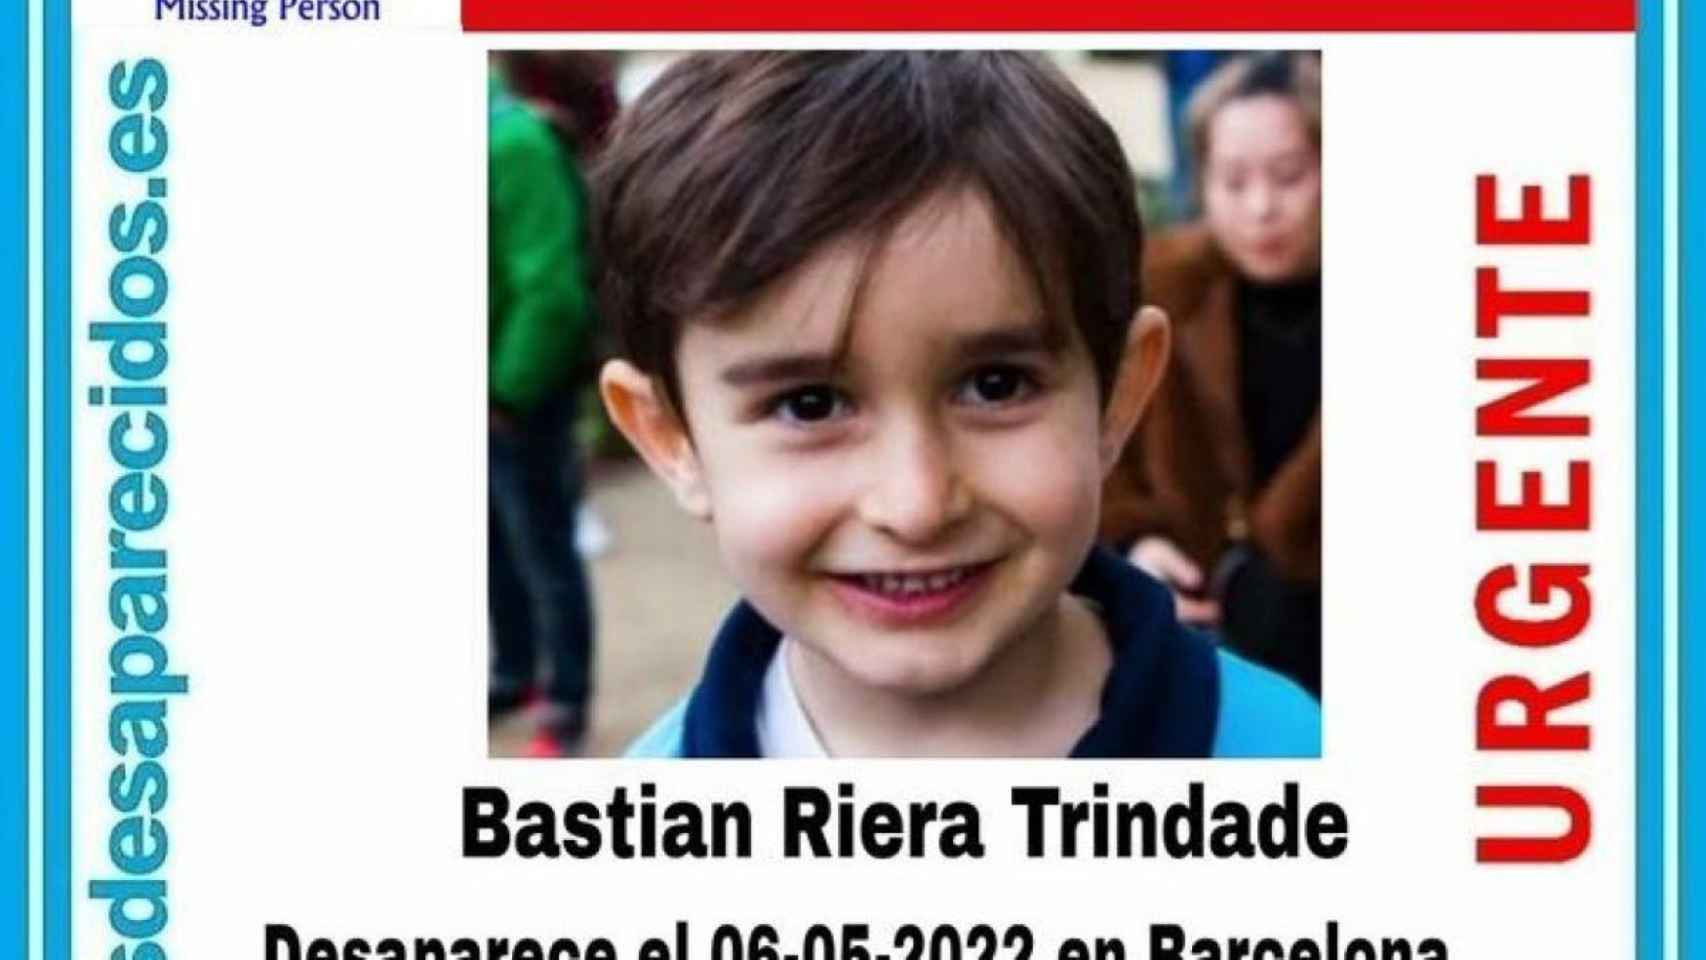 Bastian Riera, el niño de 5 años desaparecido en Barcelona / SOS DESAPARECIDOS